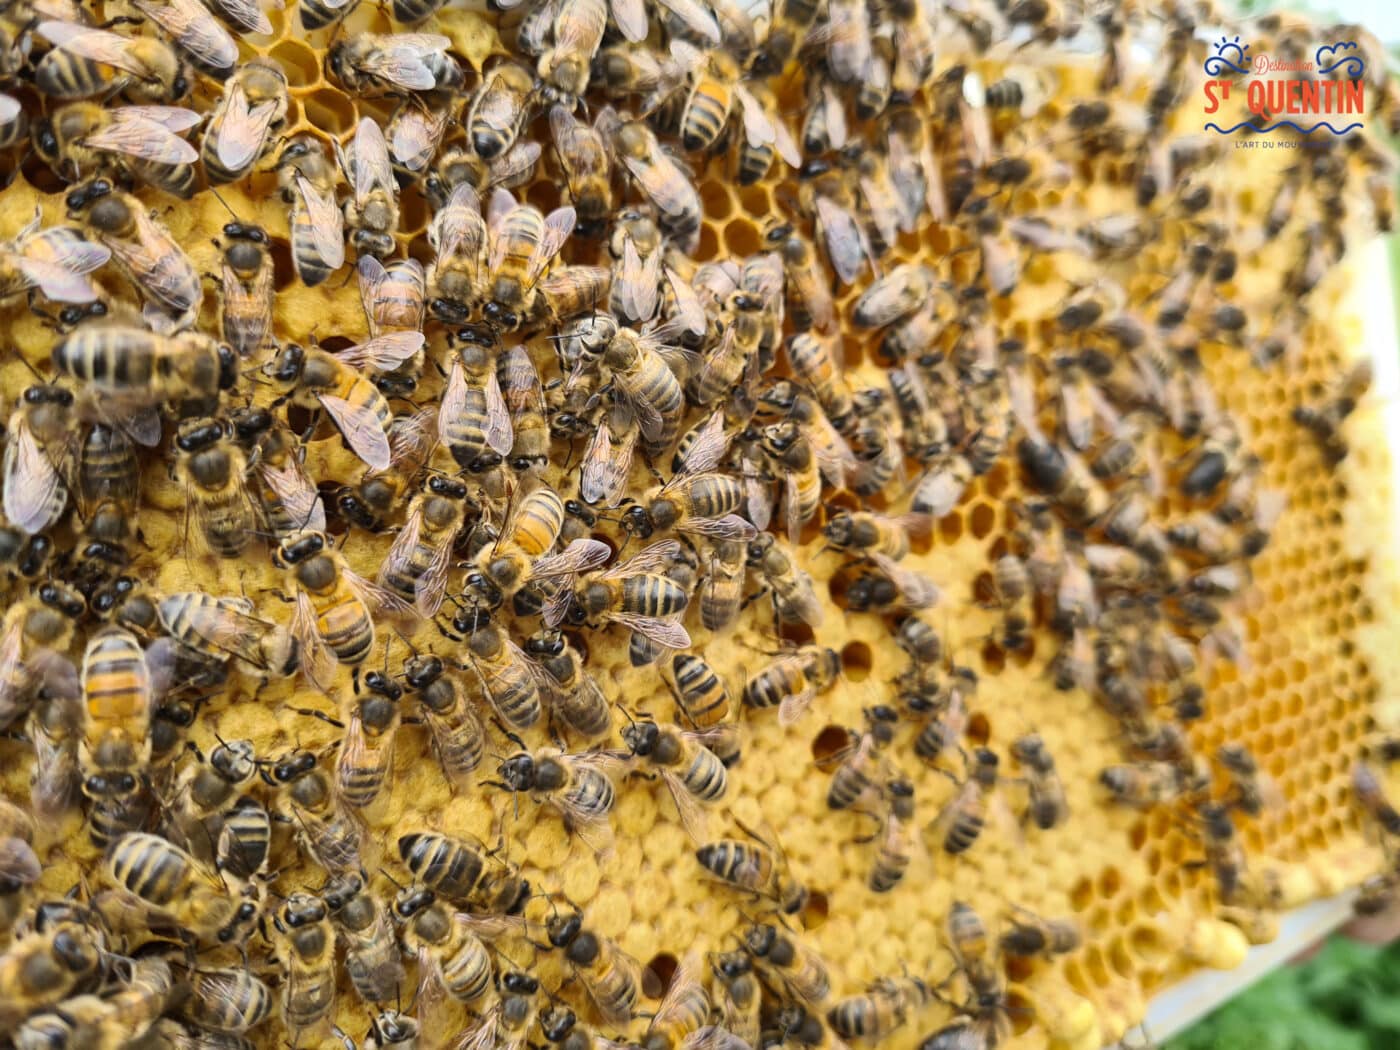 ambassadeur les abeilles de francilly 15 - Office de tourisme du Saint-Quentinois